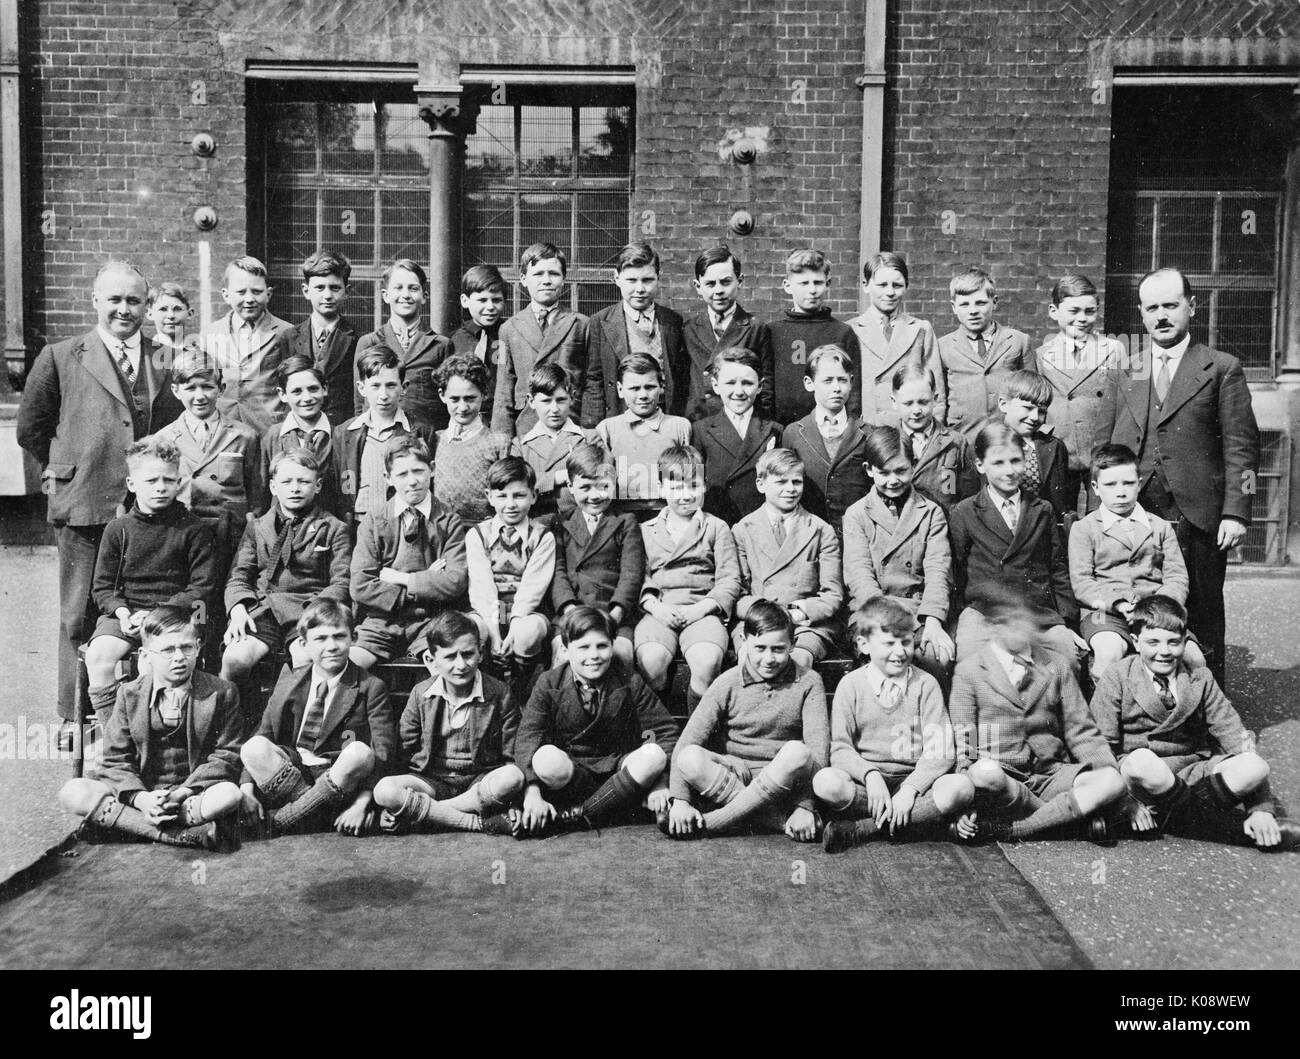 Photo de groupe, Marylebone Schoolboys, Londres Banque D'Images